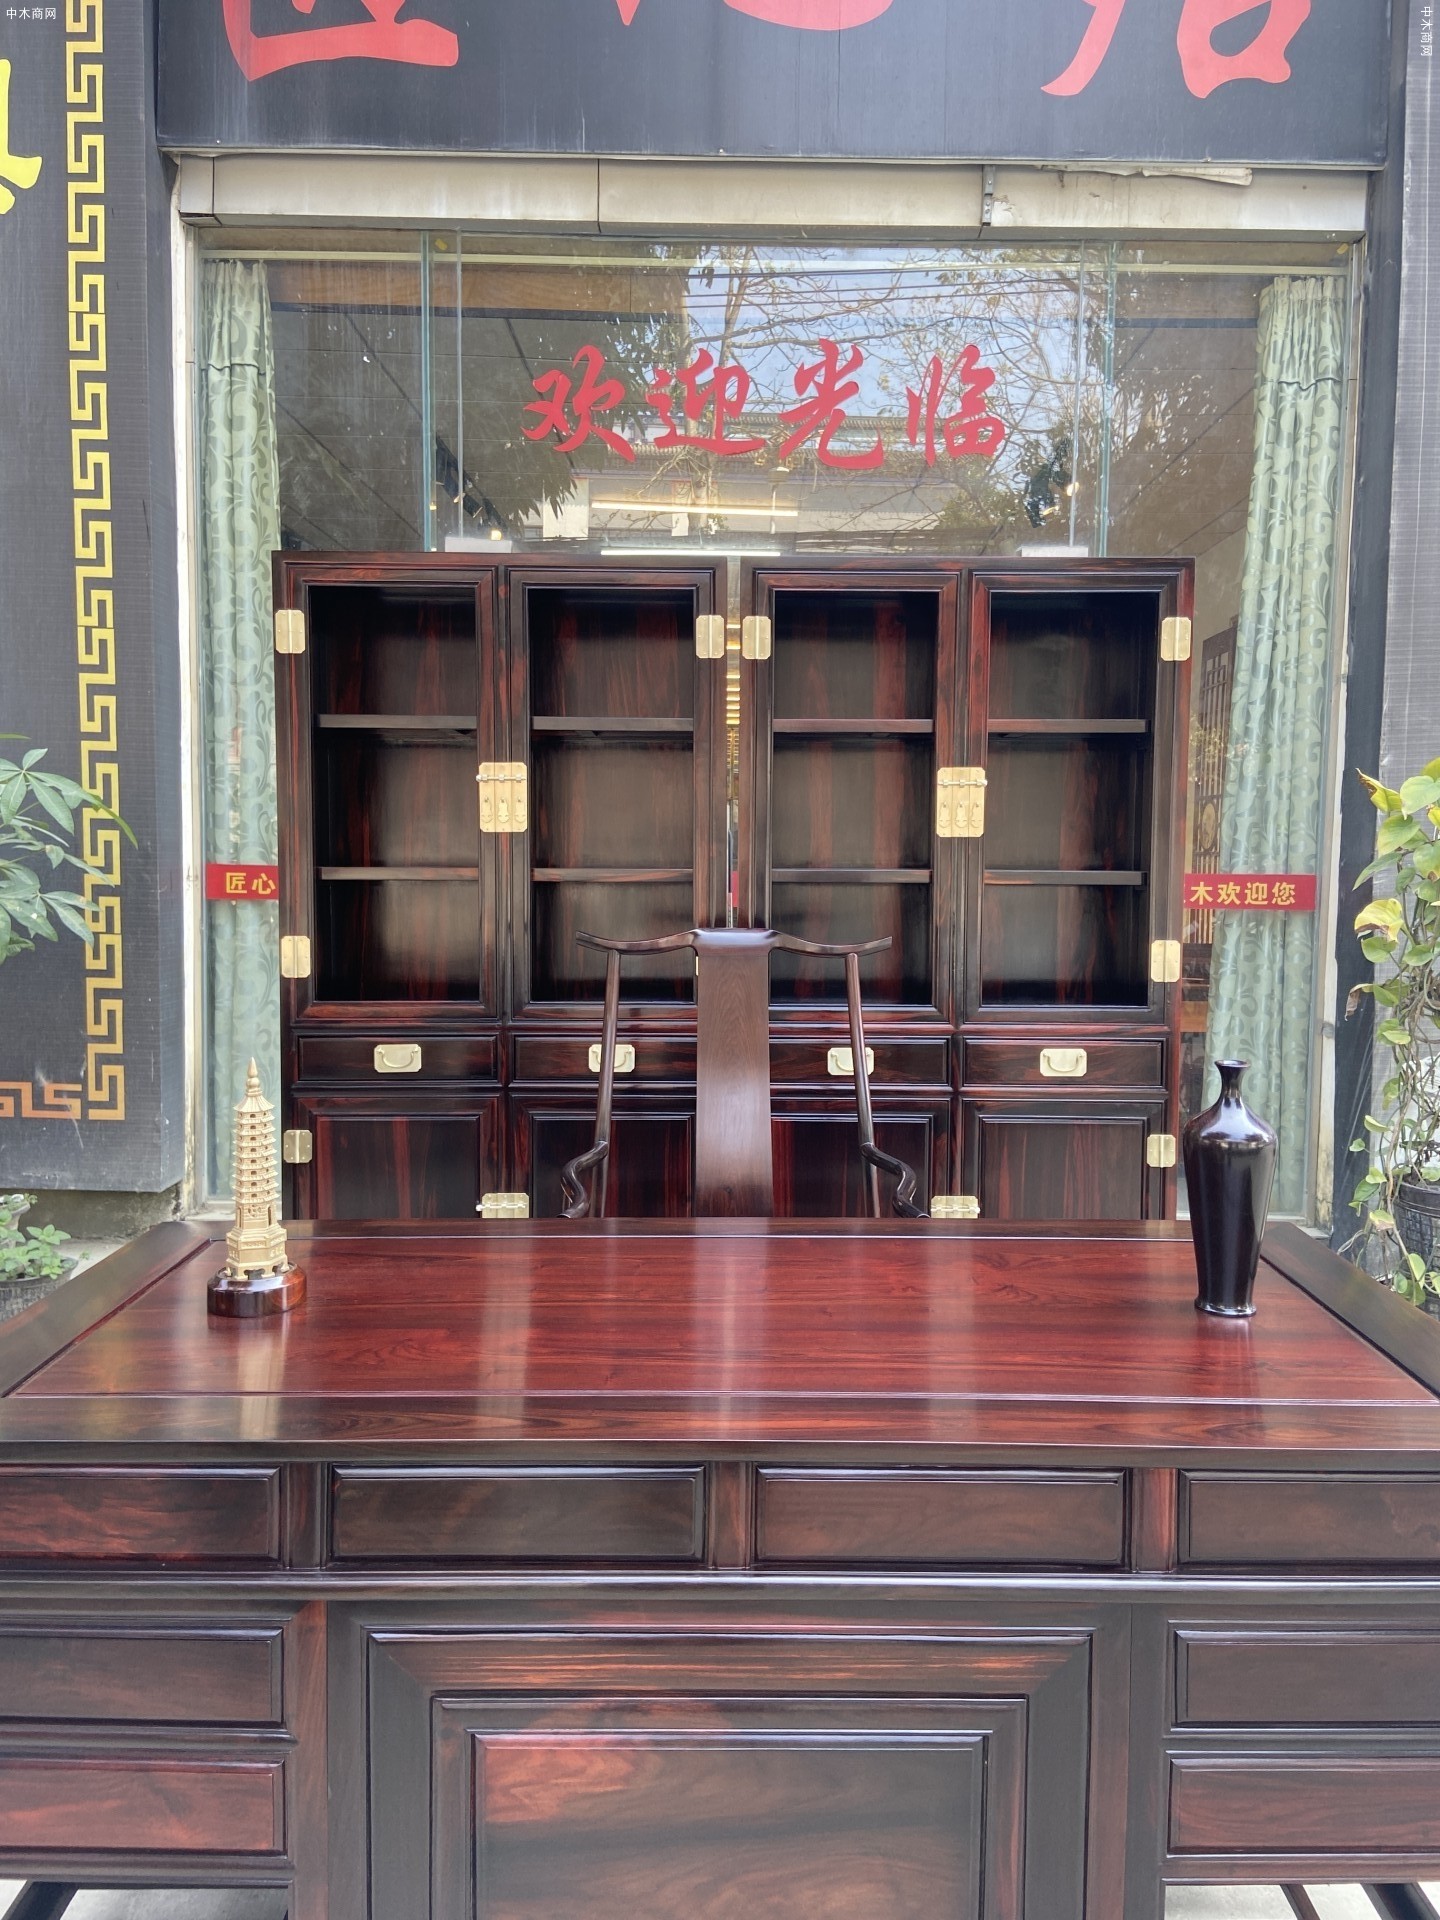 老挝大红酸枝明式书房的传承与再生,专家齐论匠心居红木明式书房图片